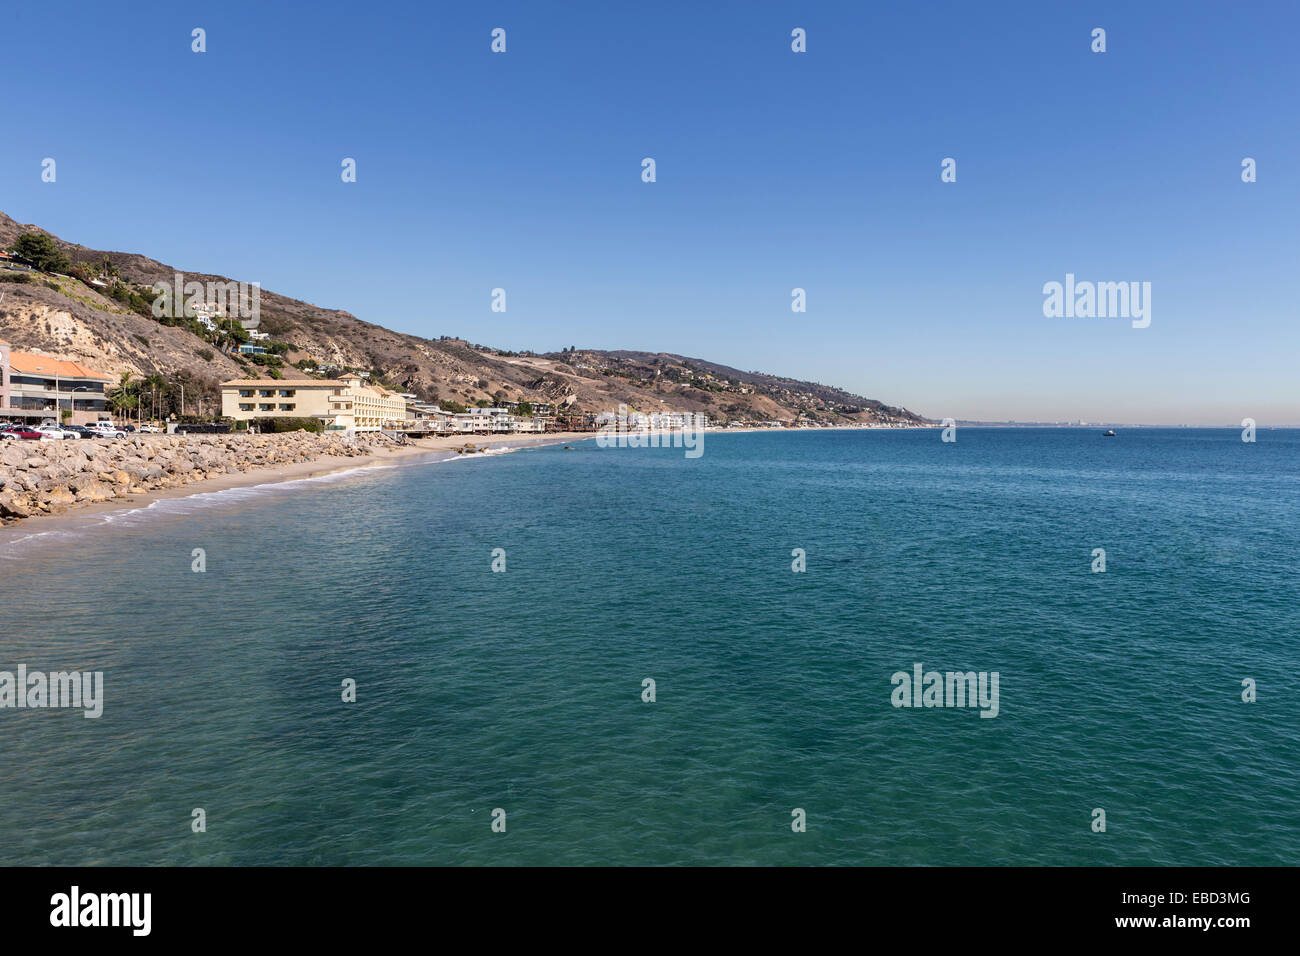 Pacific ocean shoreline seascape in Malibu, California. Stock Photo